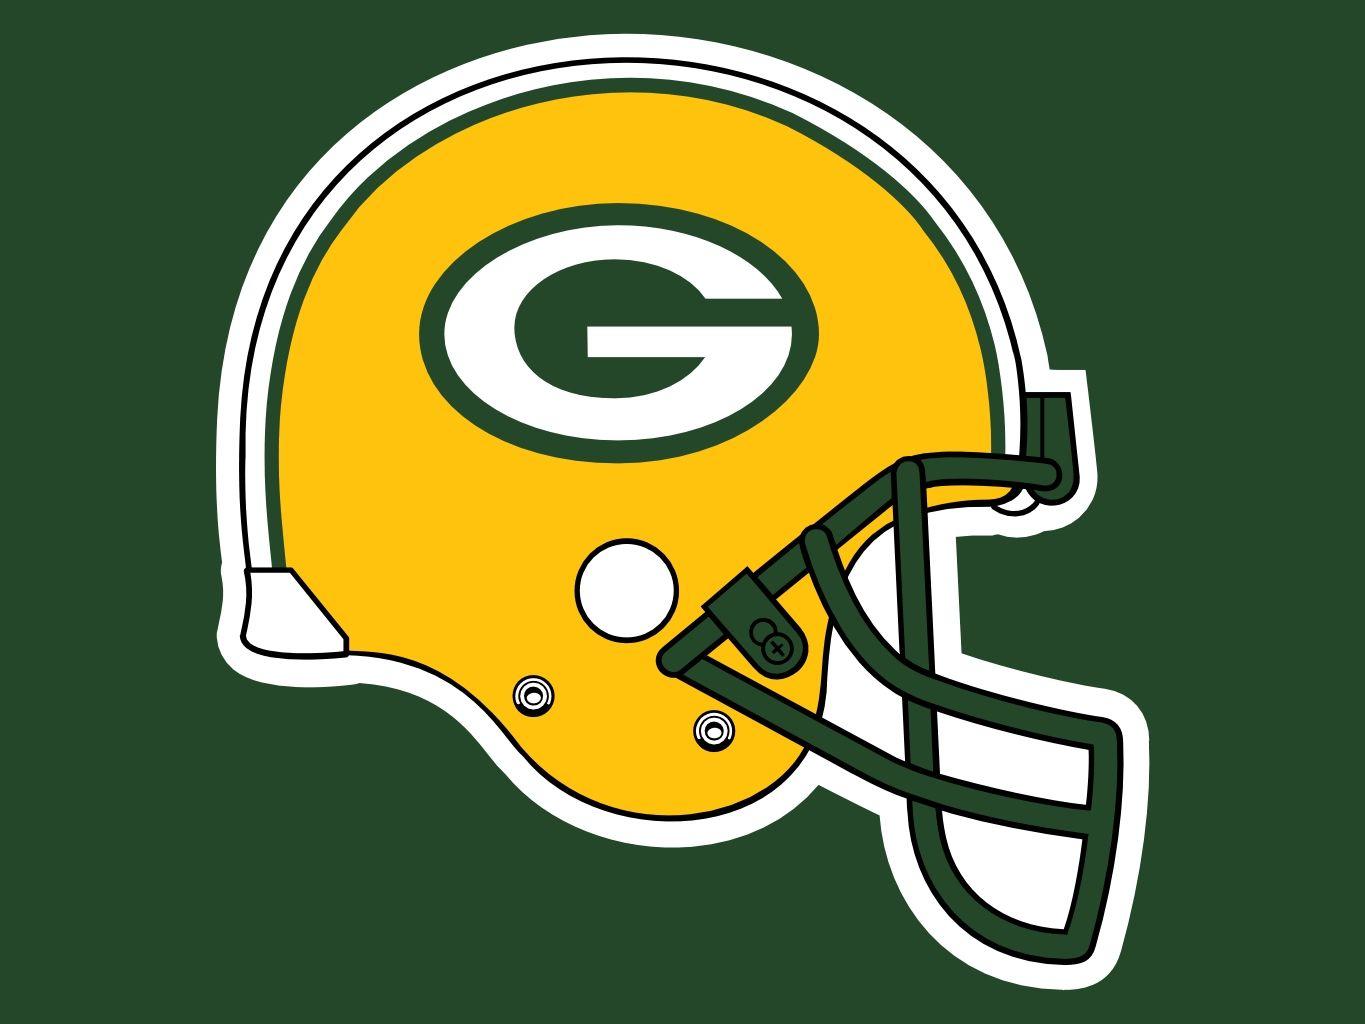 Football Green Bay Packers Helmet